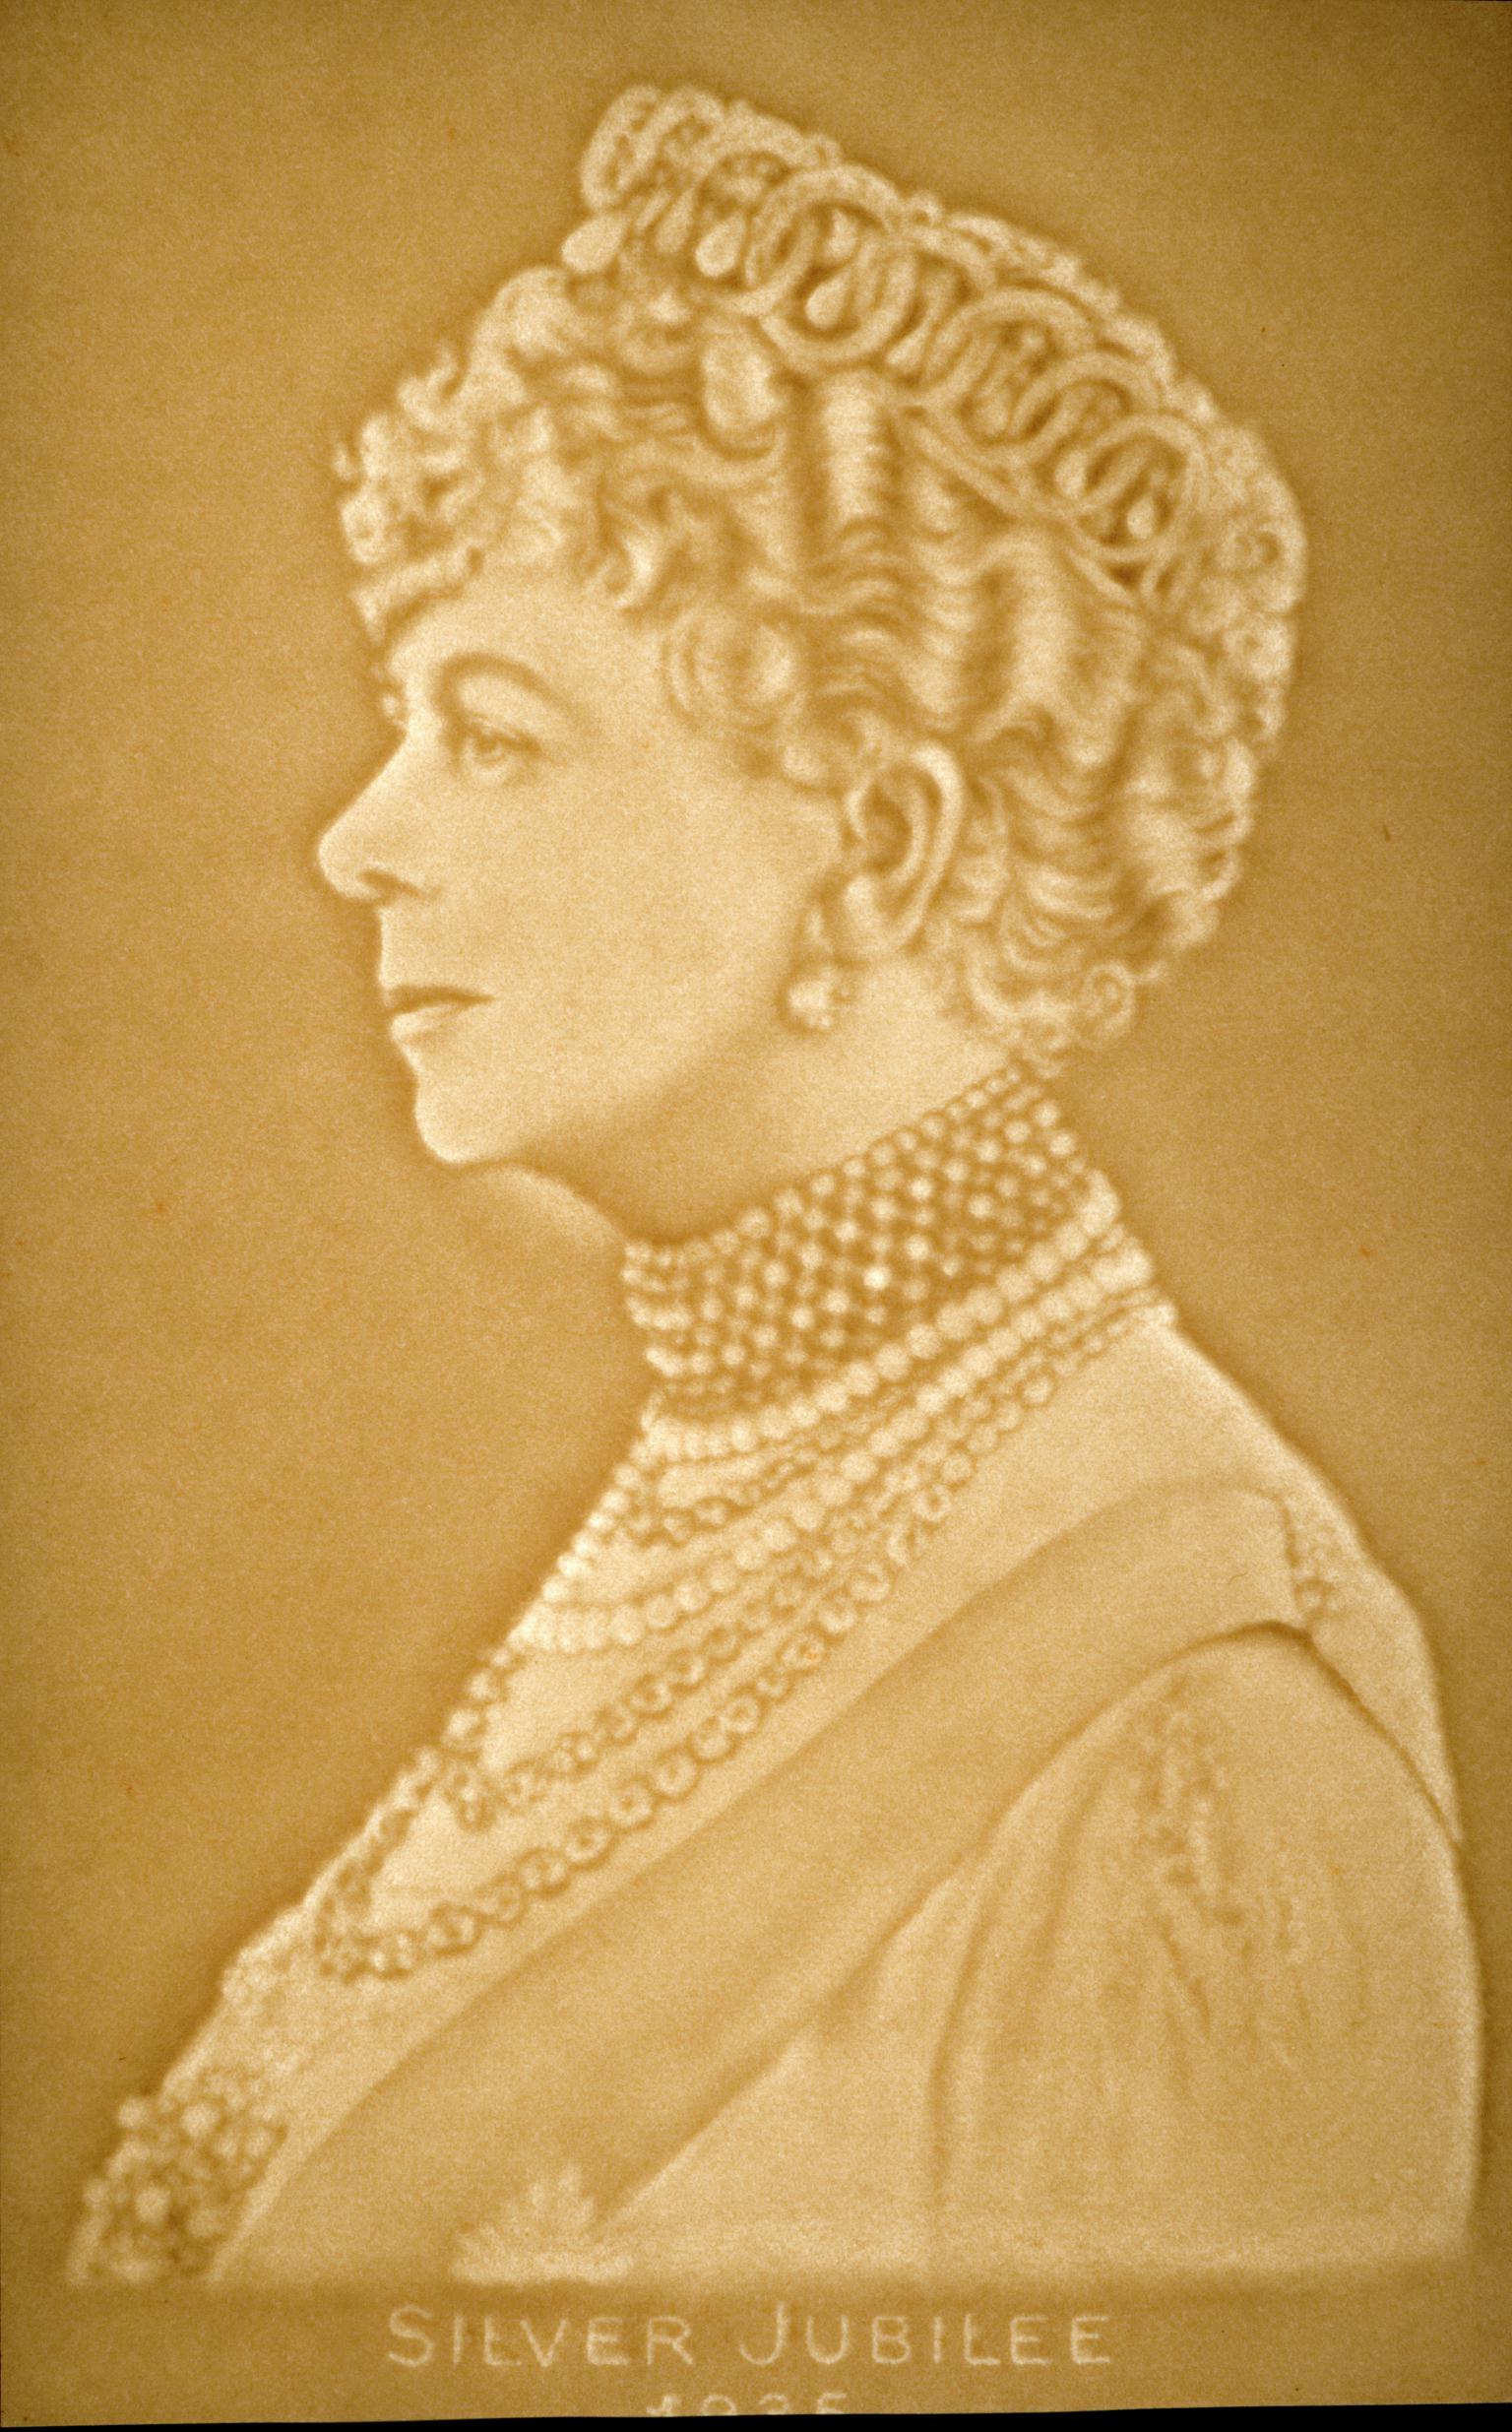 Watermark portrait of Queen Mary